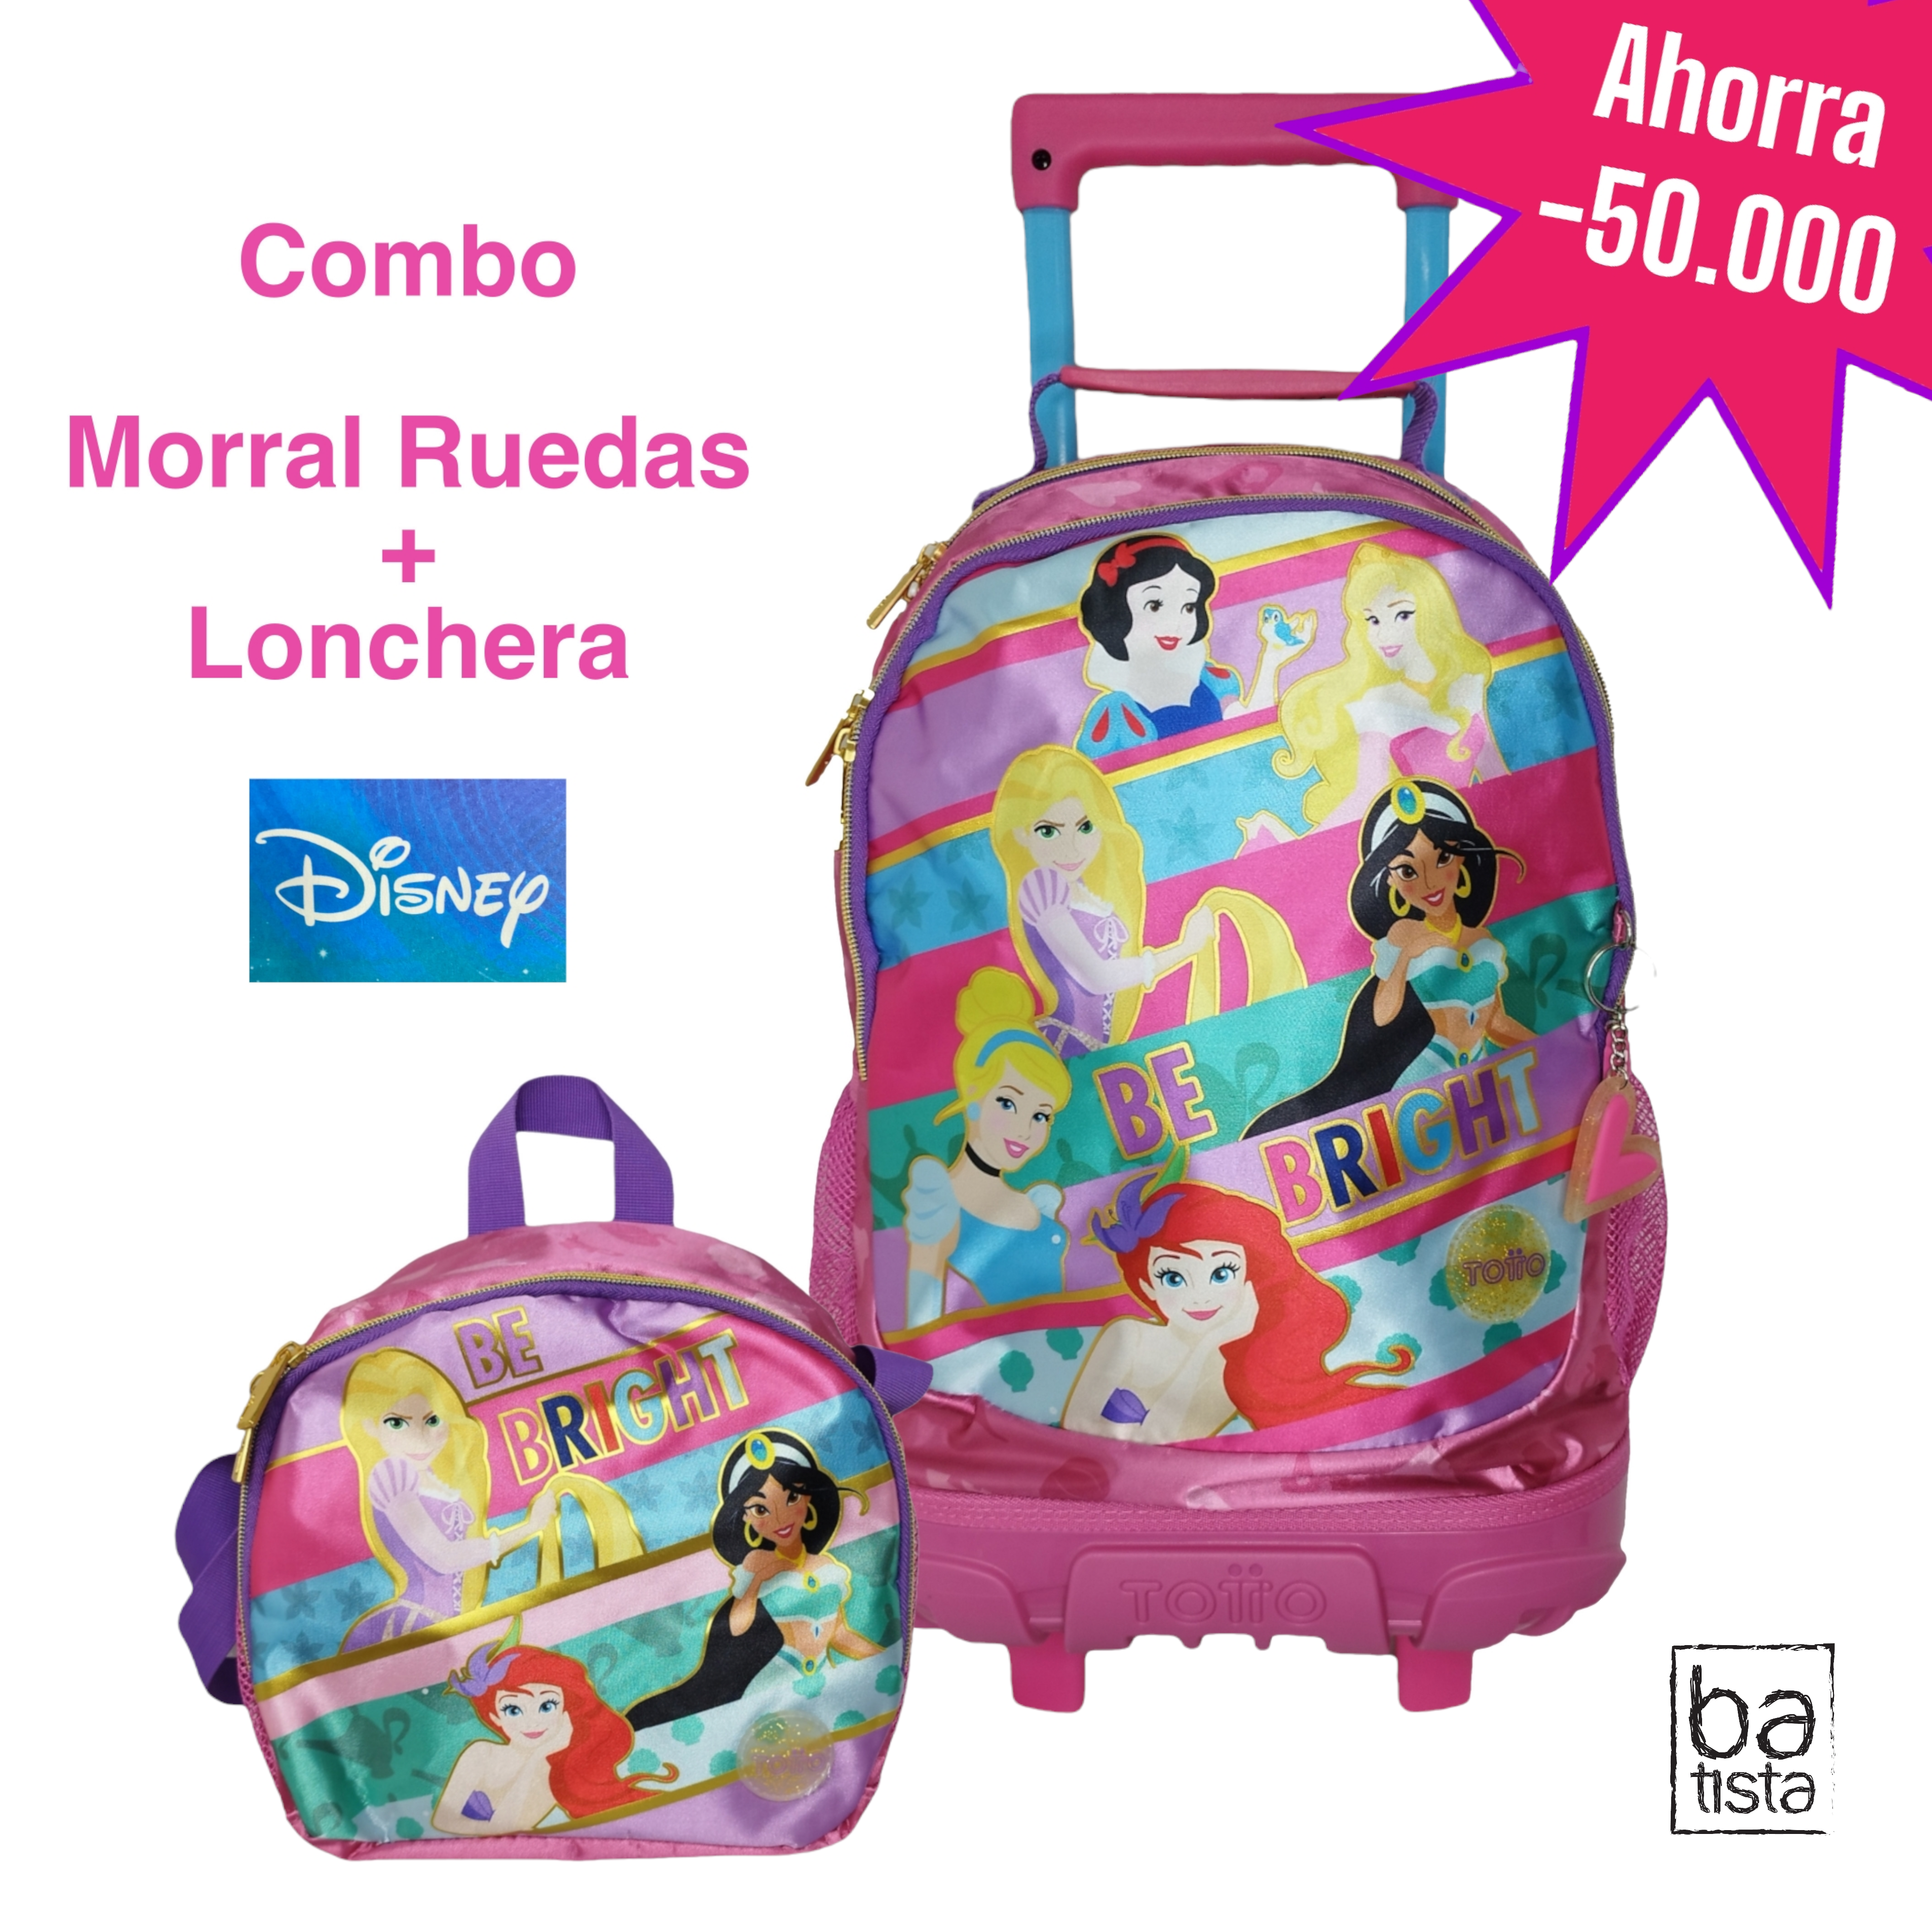 Combo Morral con Ruedas Totto Team Princess M